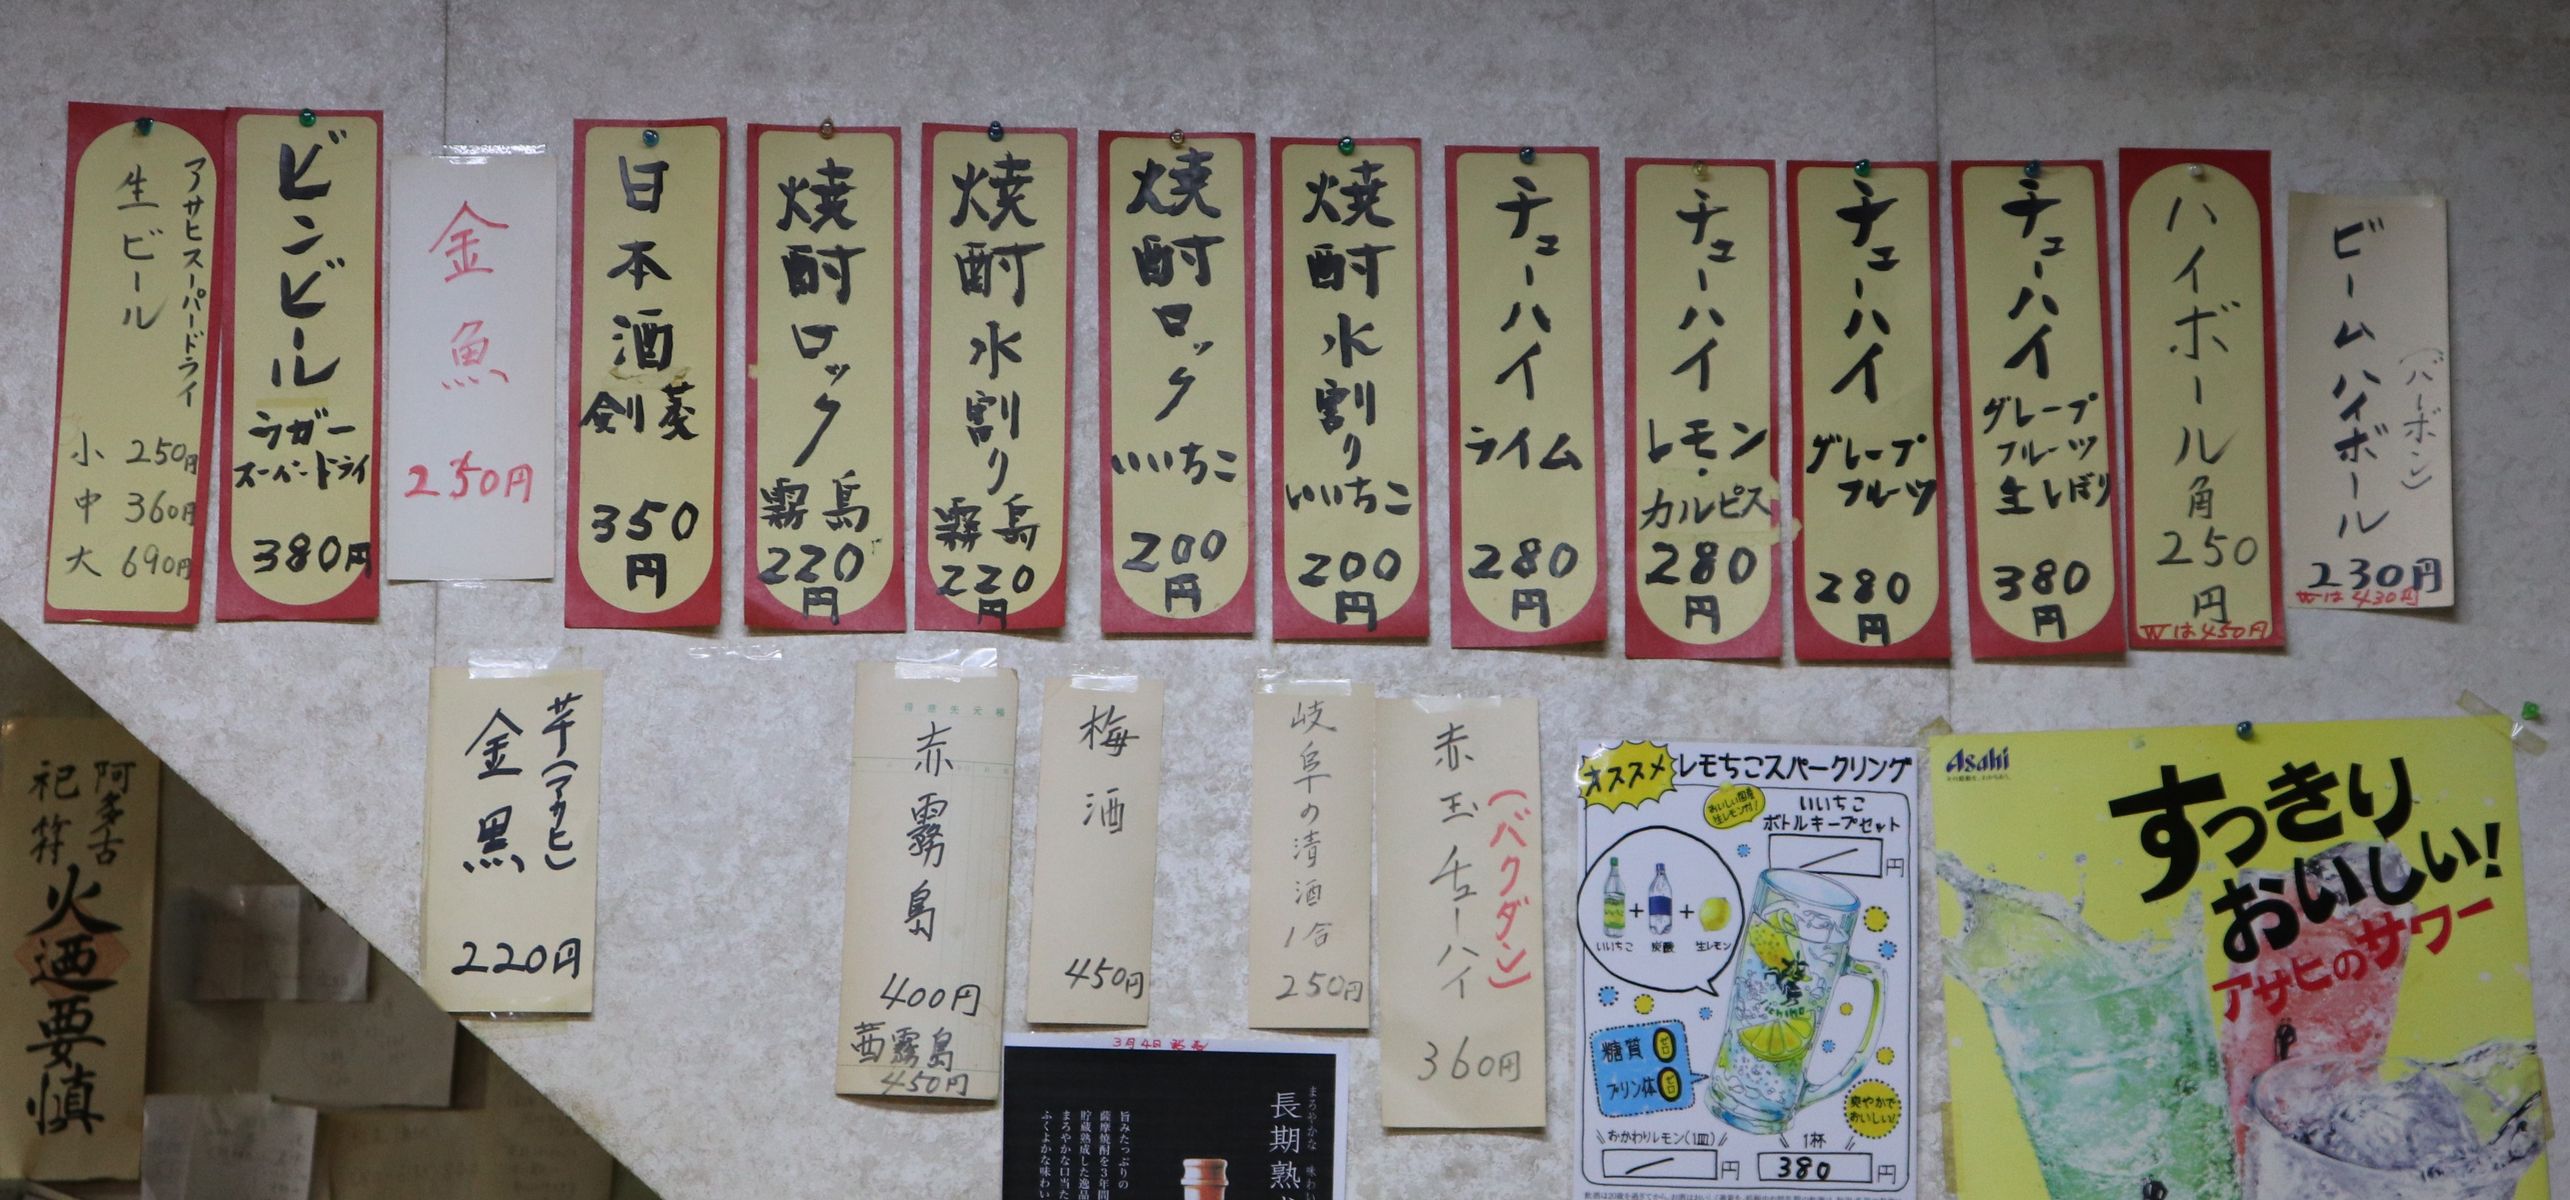 京都駅前なのに安くて美味しい居酒屋さん 京都 立ち飲み えんどう やまでらのぶらりグルメ ぶらり日記